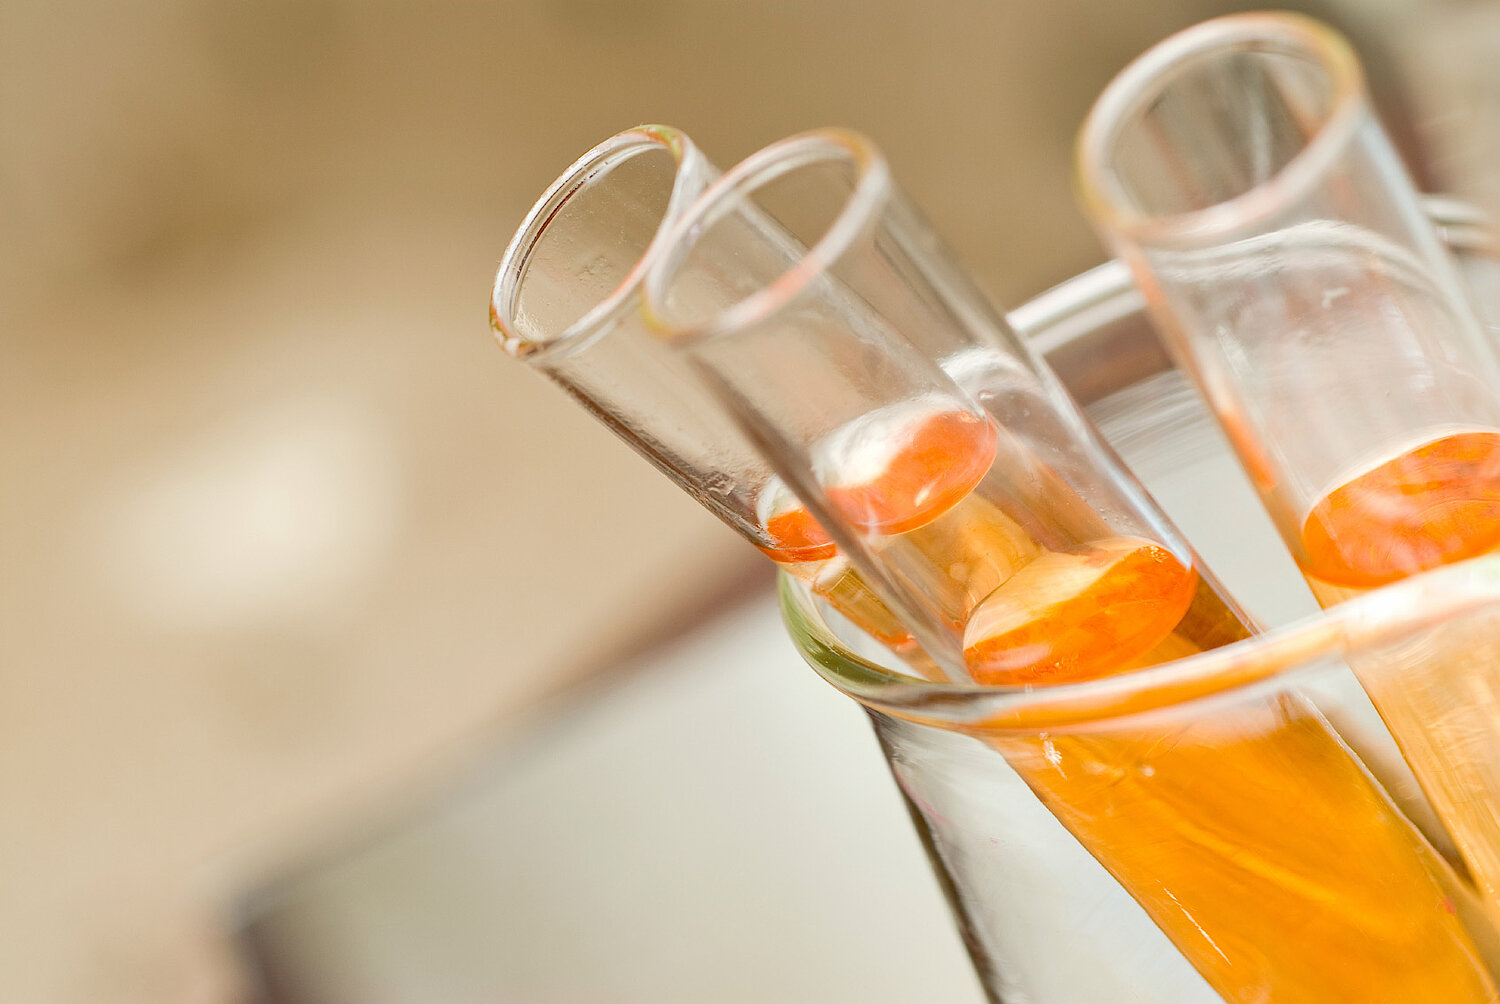 Foto Teströhrchen mit oranger Flüssigkeit